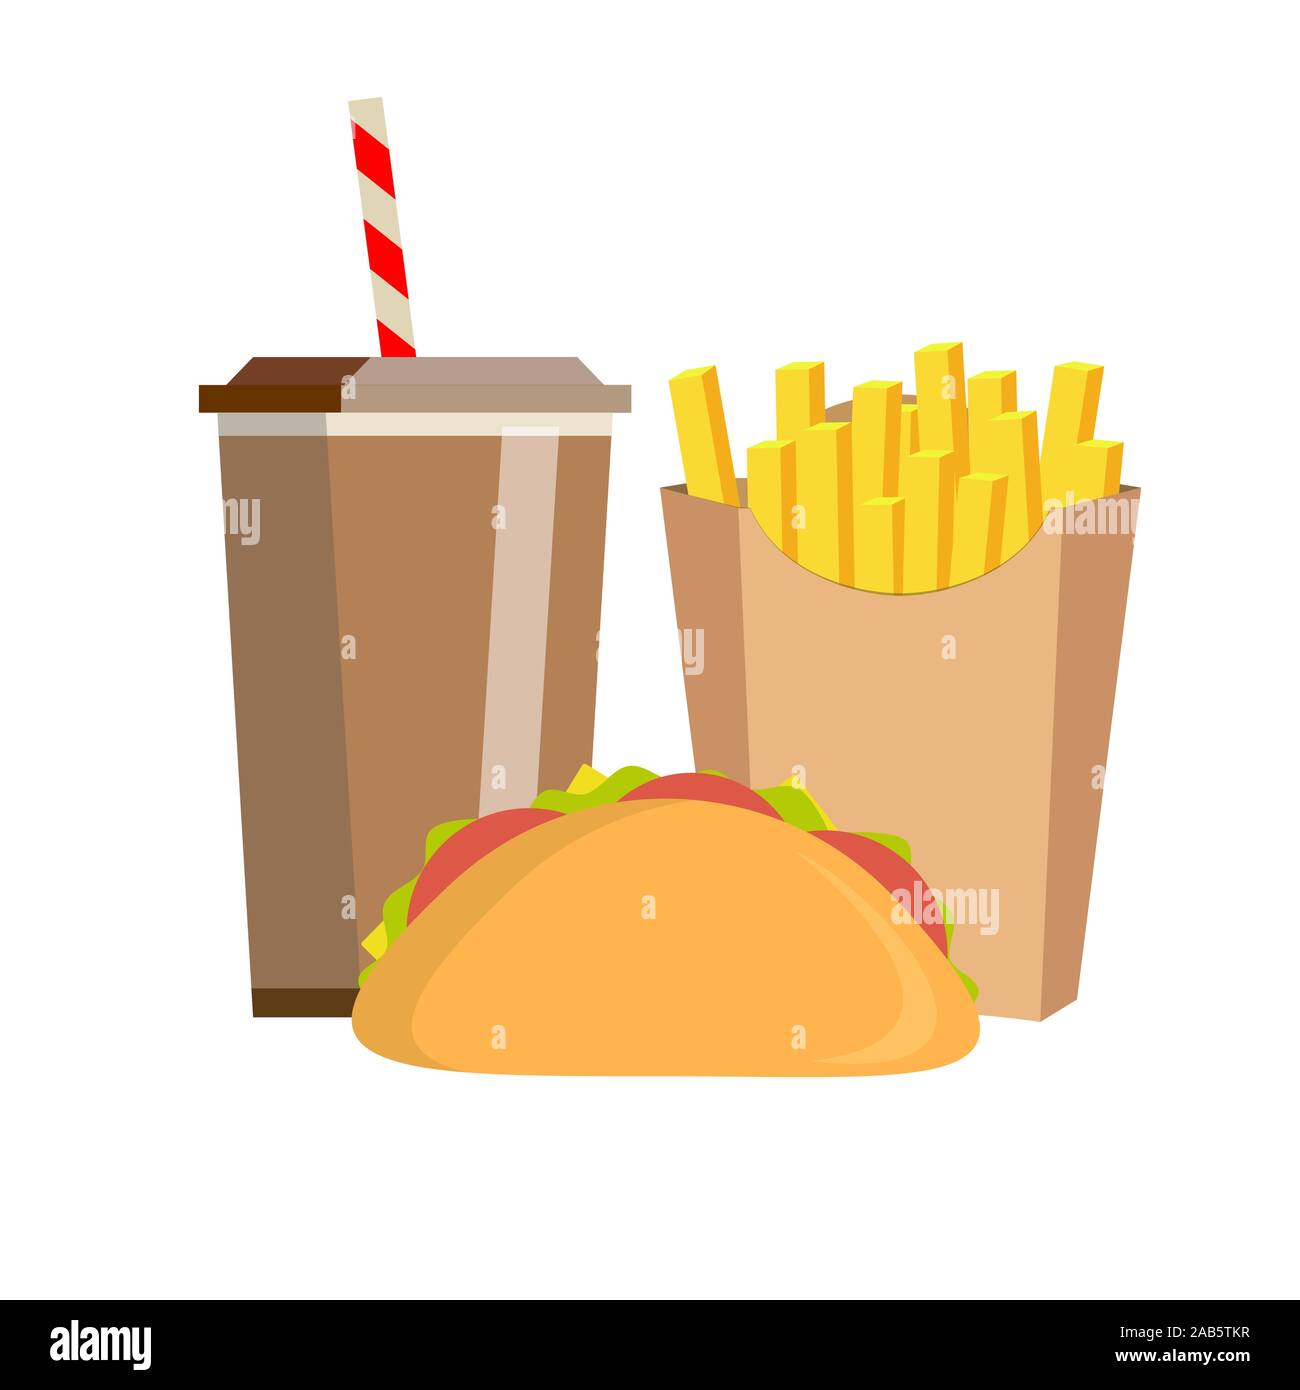 Mit Pommes frites, Sandwich und Soda auf isolierten Hintergrund Mittagessen zum Mitnehmen. Fast food. Flache Bauform. Stock Vektor